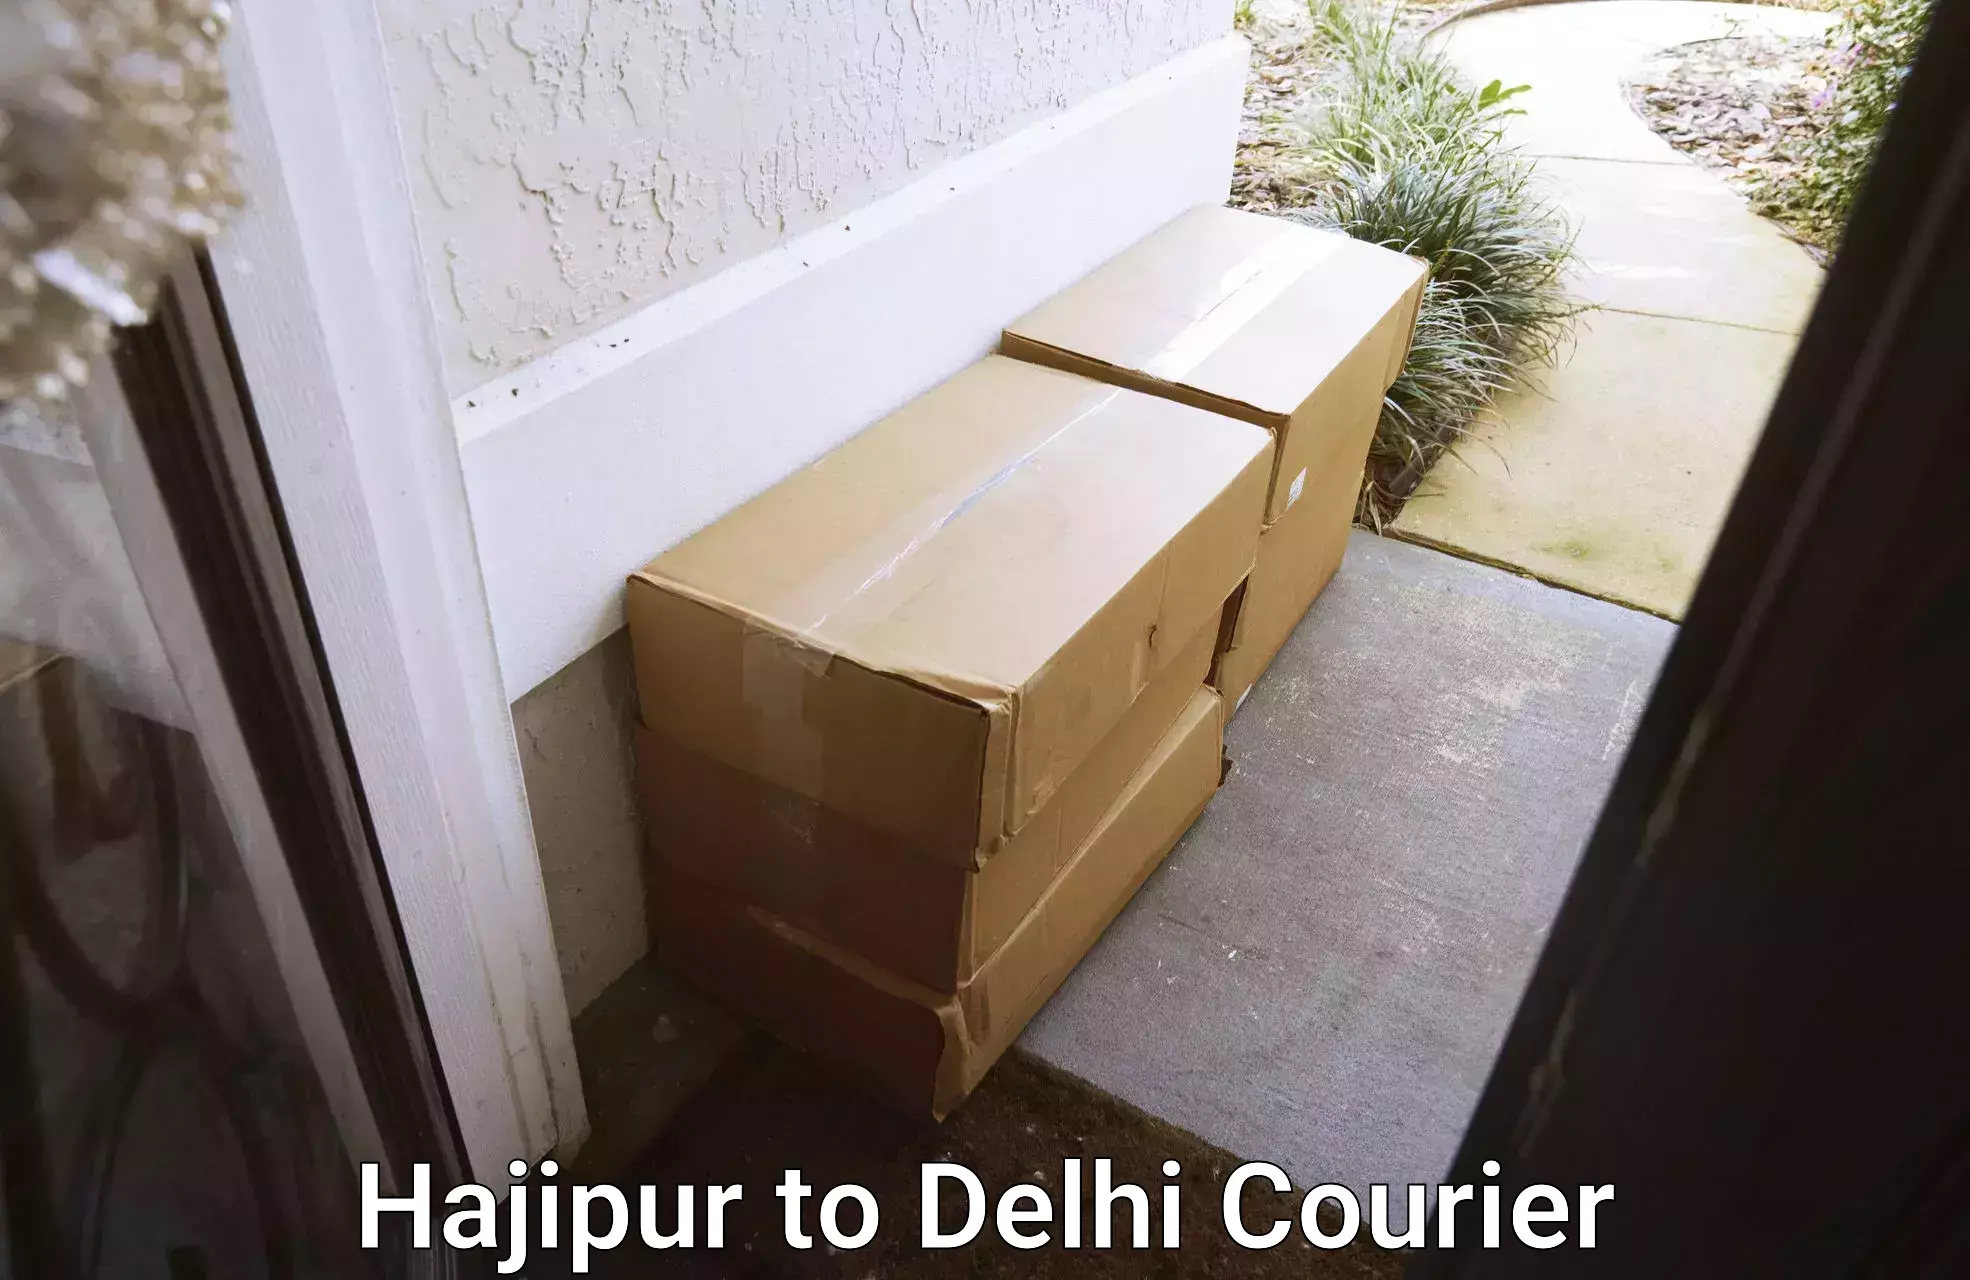 Full-service household moving Hajipur to Delhi Technological University DTU